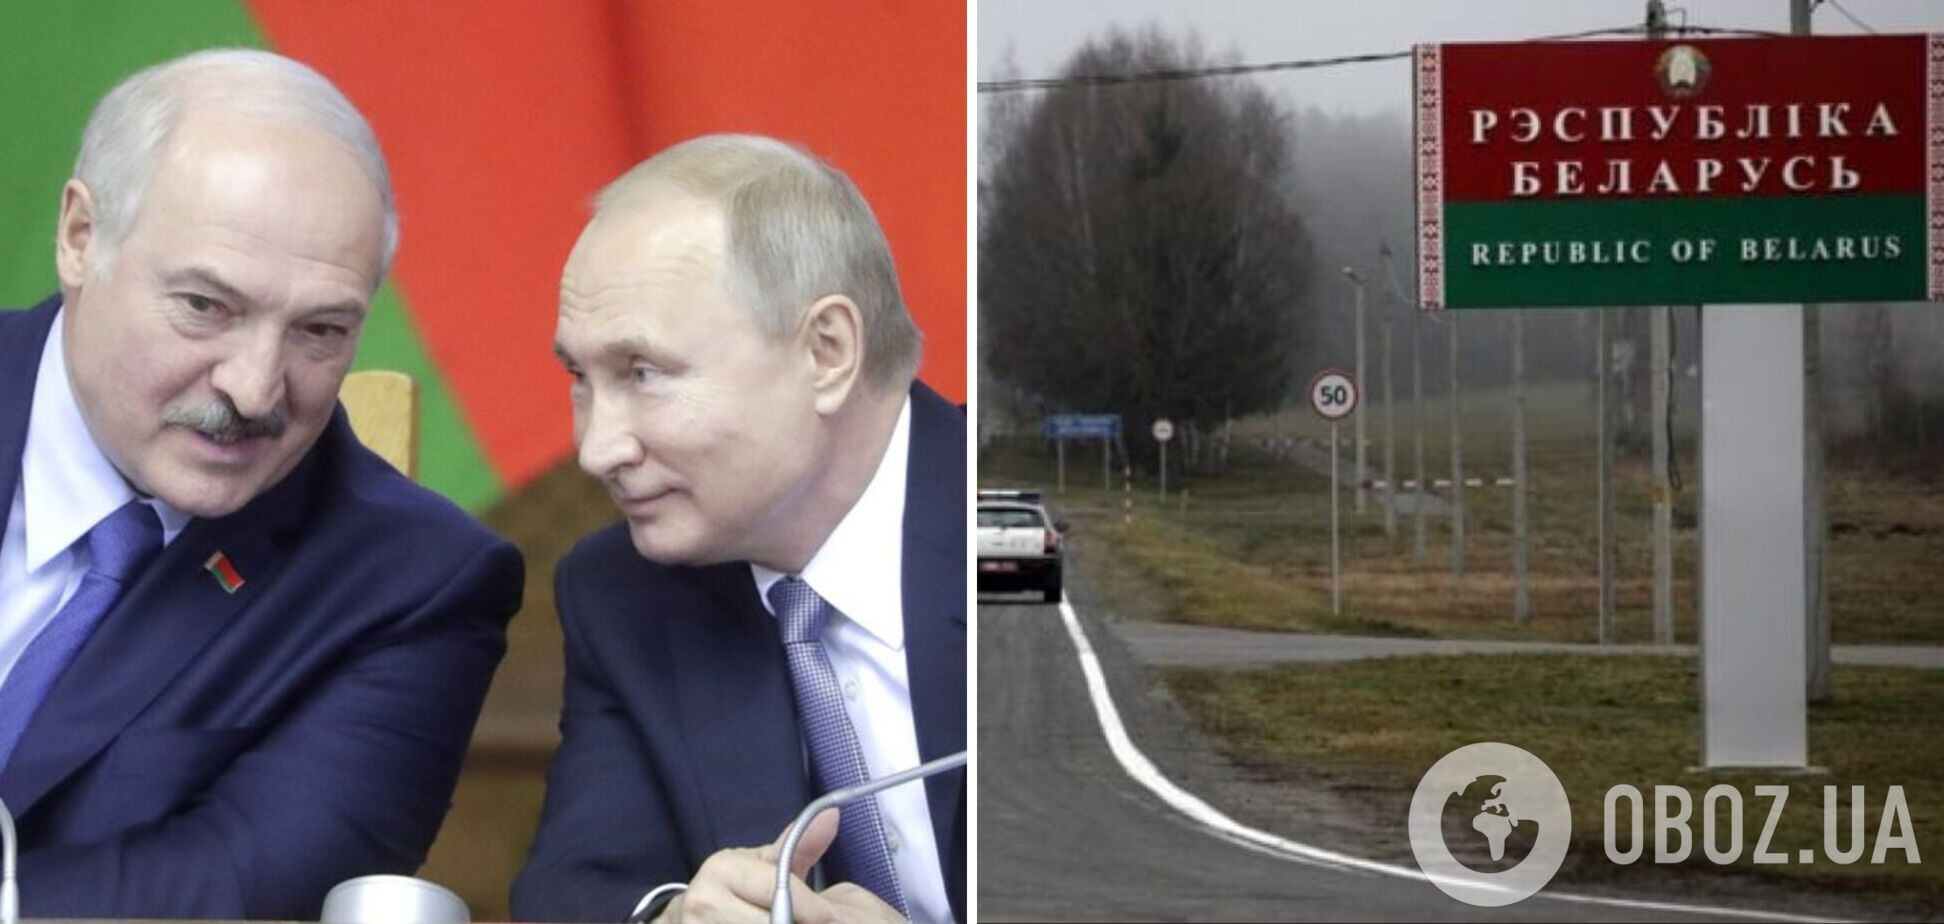 Россия перебросила в Беларусь группу наемников для теракта под 'чужим флагом': Путин хочет вынудить Лукашенко к войне против Украины - СМИ